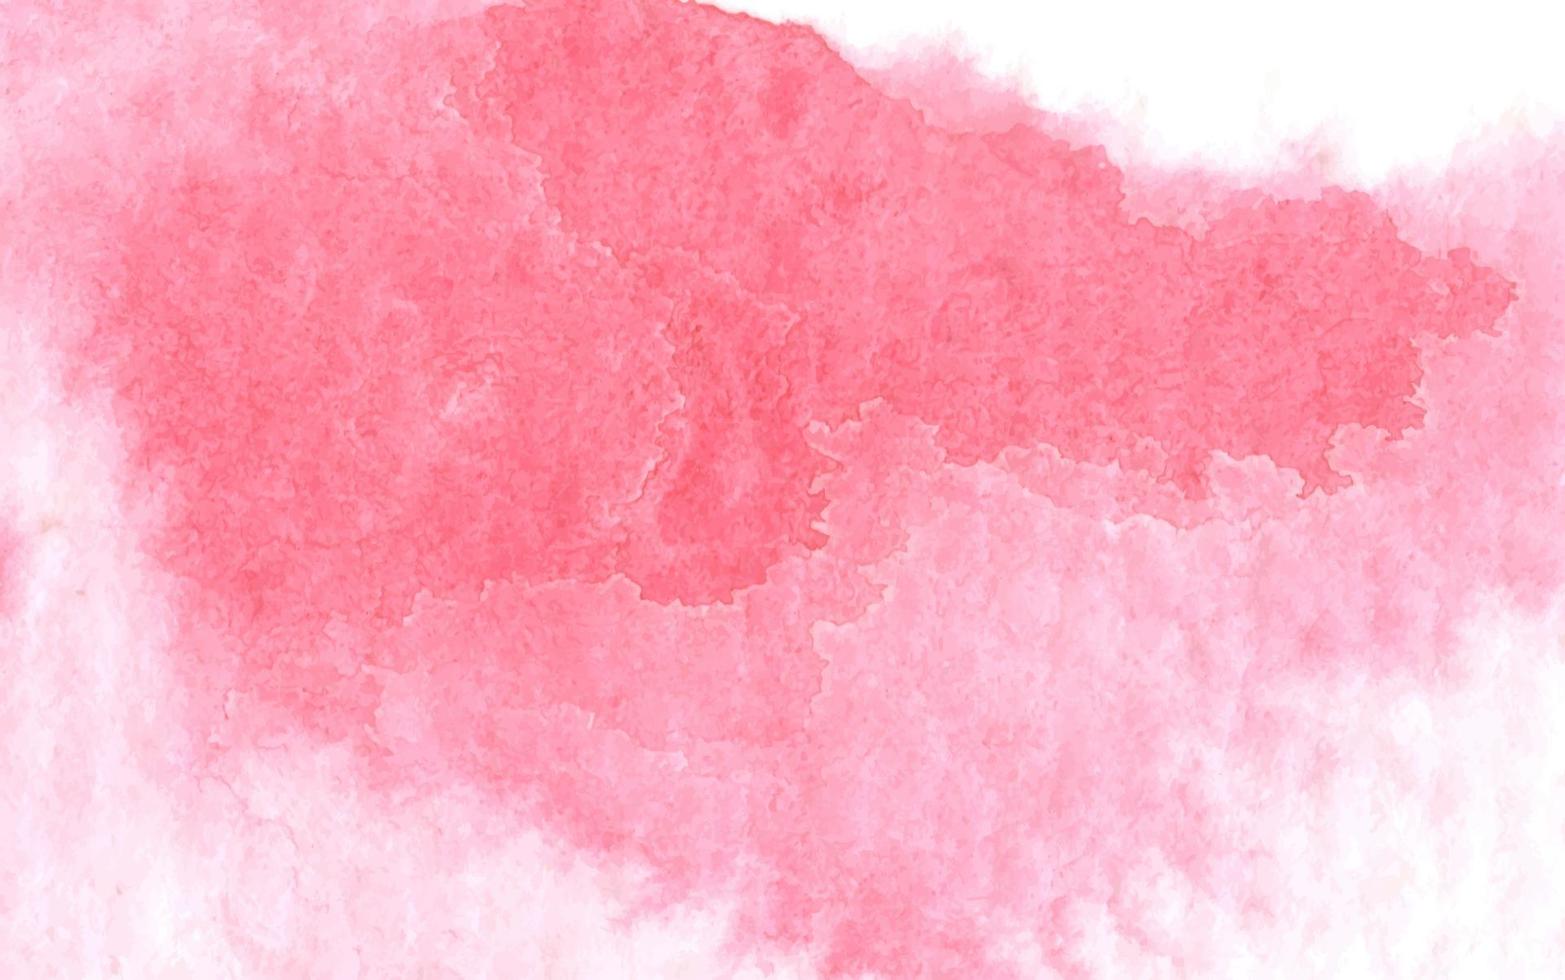 manchas rosa em papel texturizado. fundo aquarela abstrato. vetor